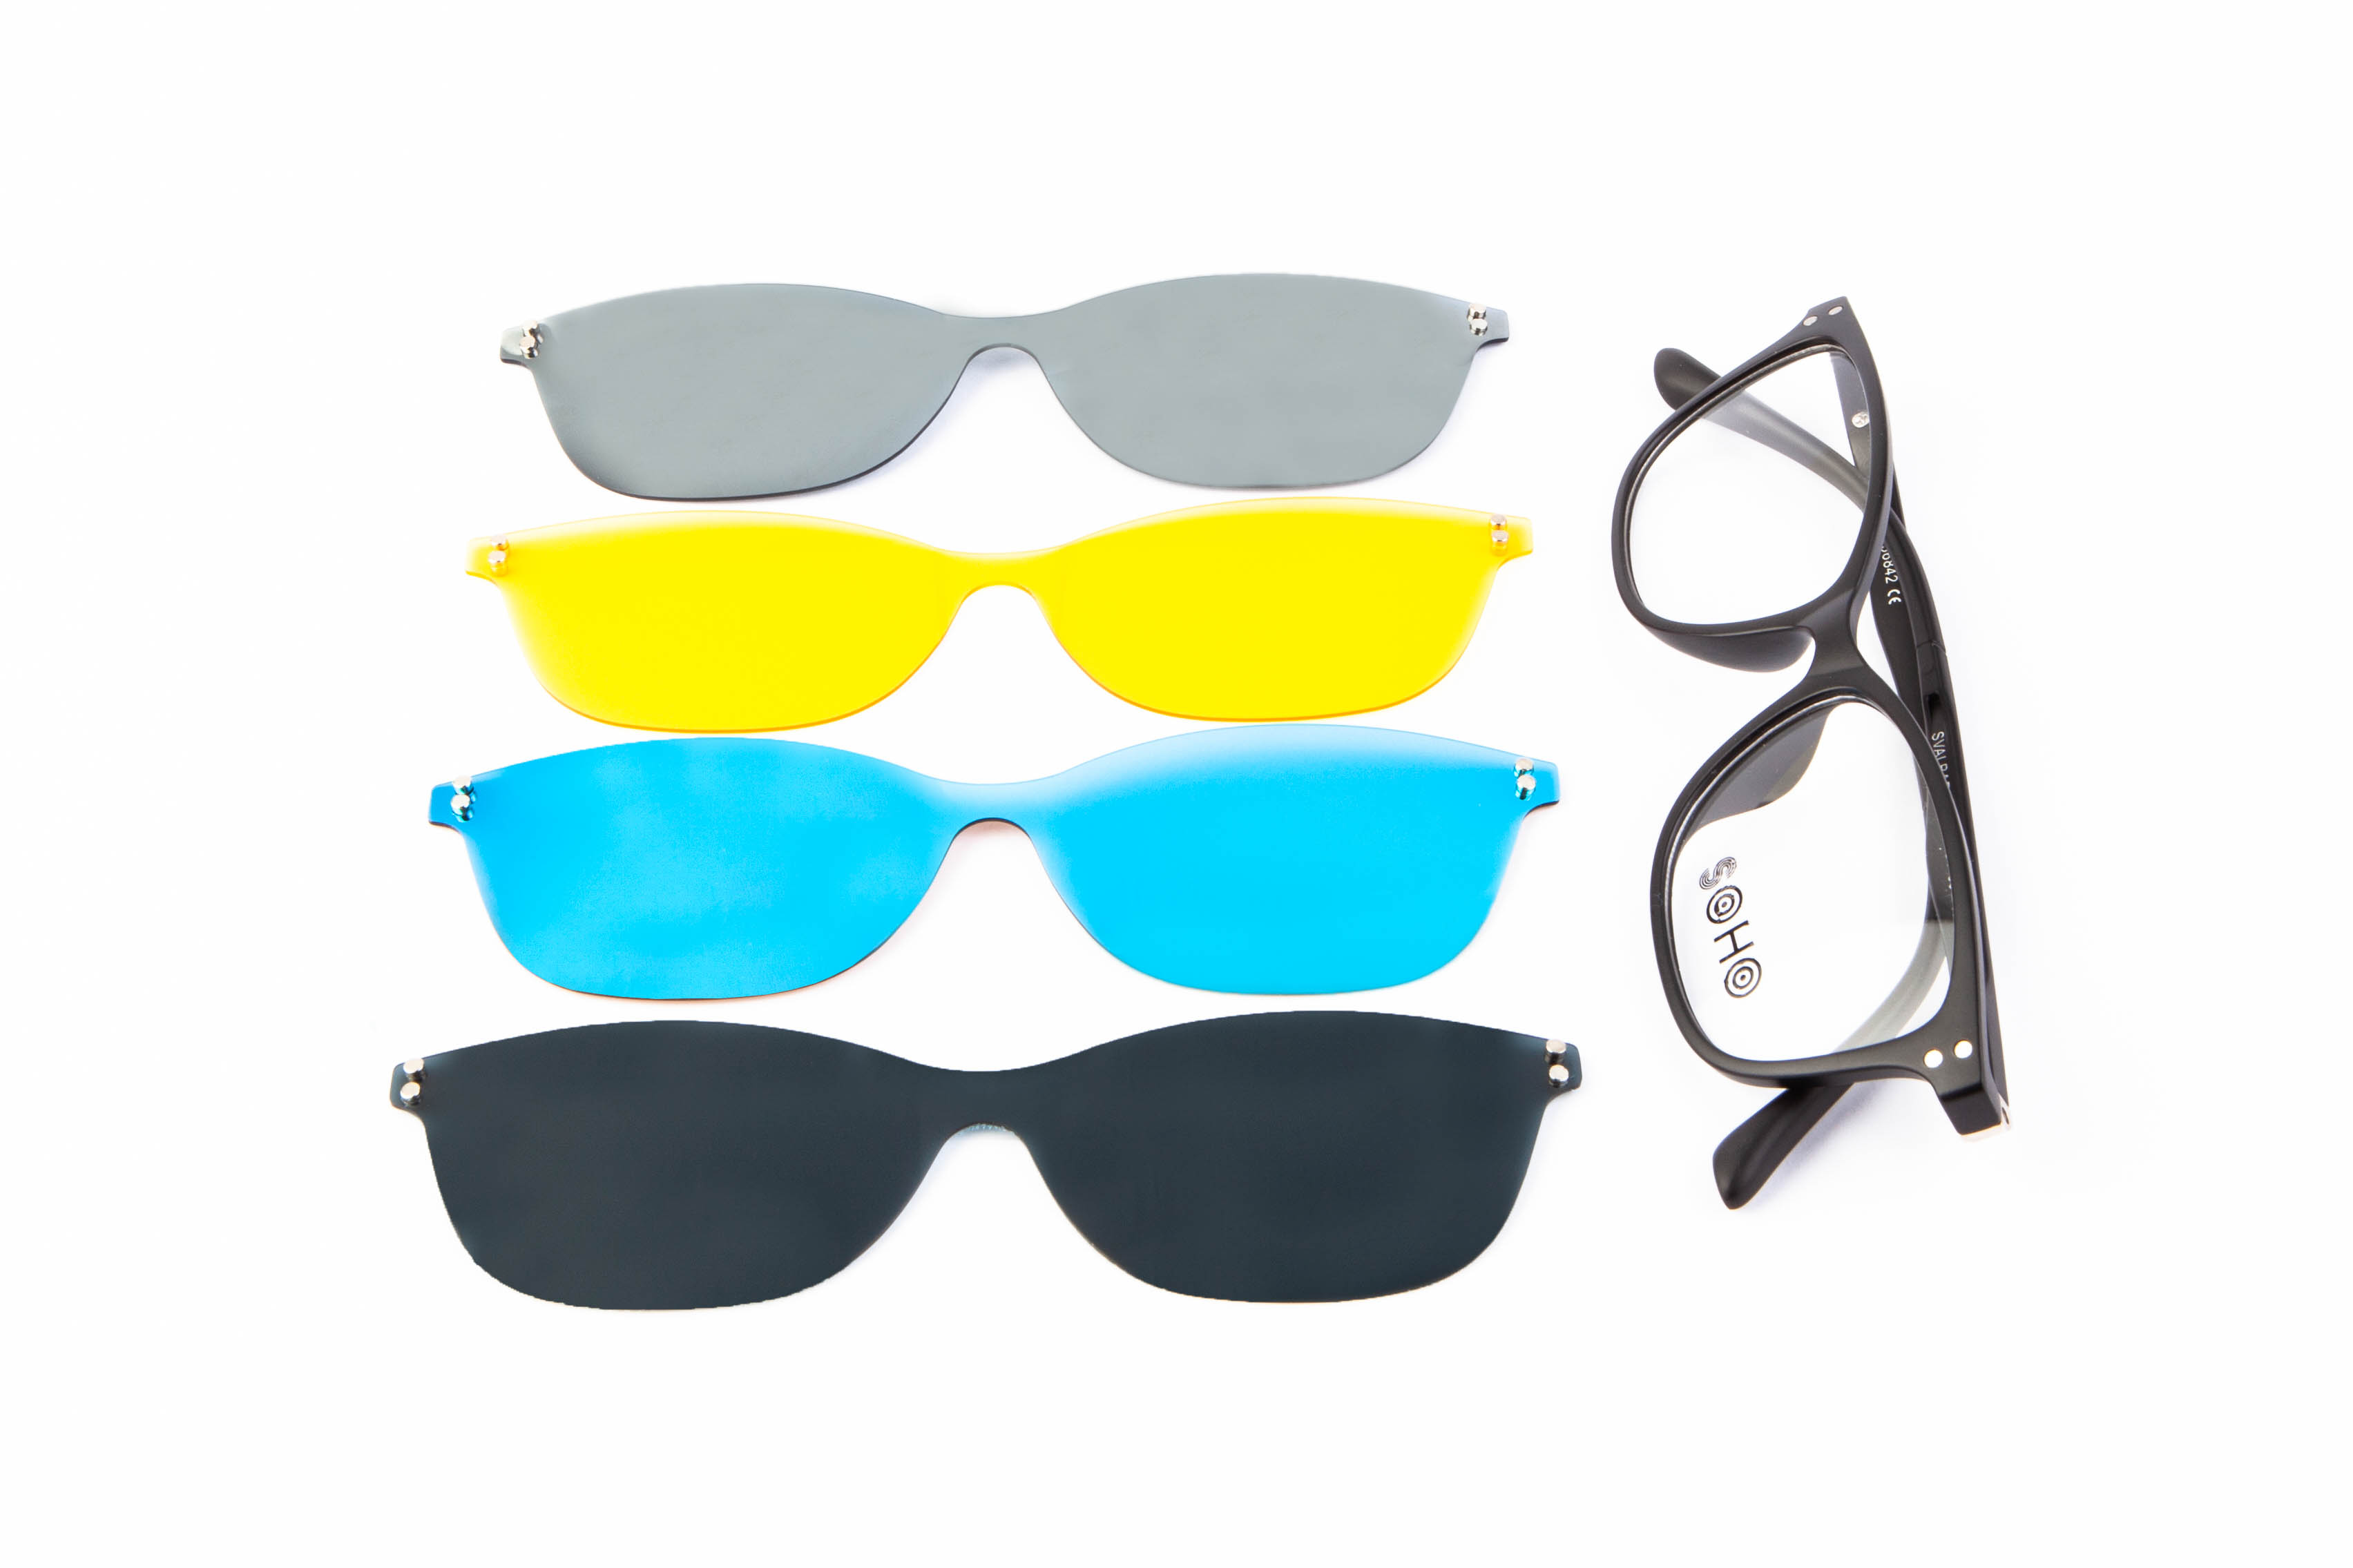 A la moda con las gafas Clip-on graduadas de Soho - El Blog de Medical  Óptica Audición